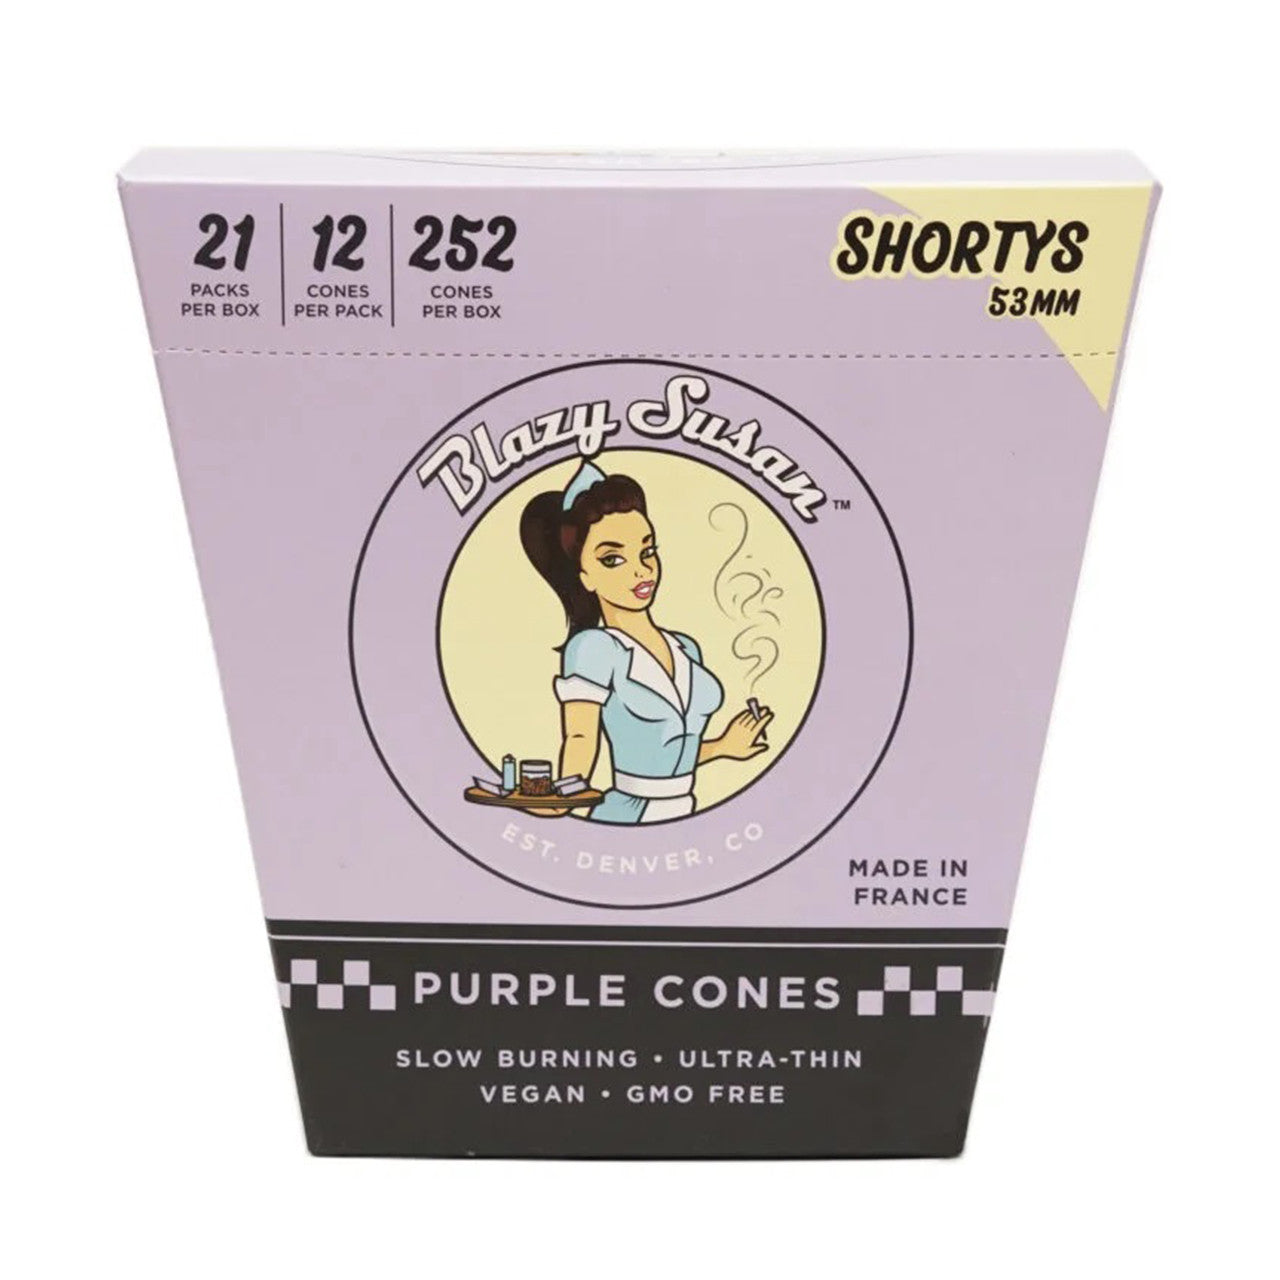 Blazy Susan Purple 53mm Pre-Roll Cones Shortys (12ct)